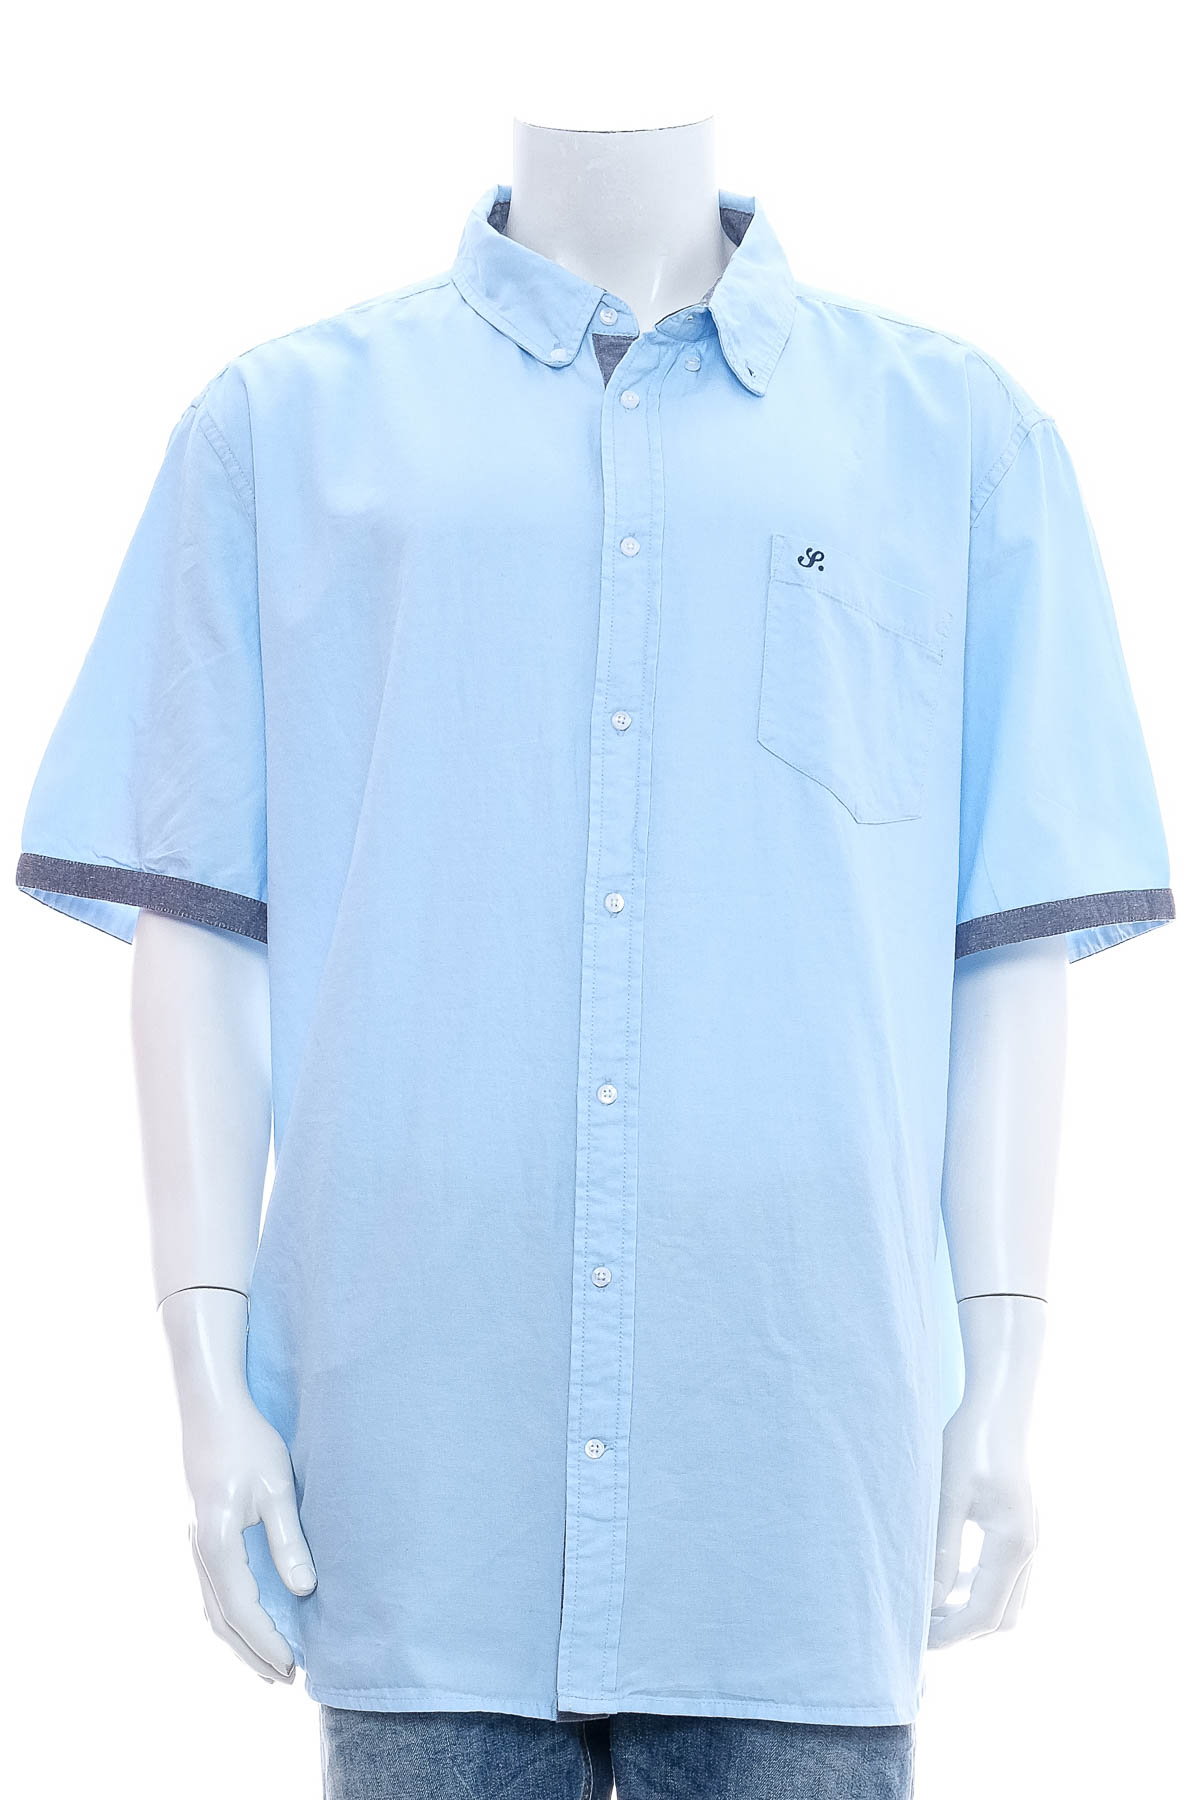 Ανδρικό πουκάμισο - Bpc selection bonprix collection - 0